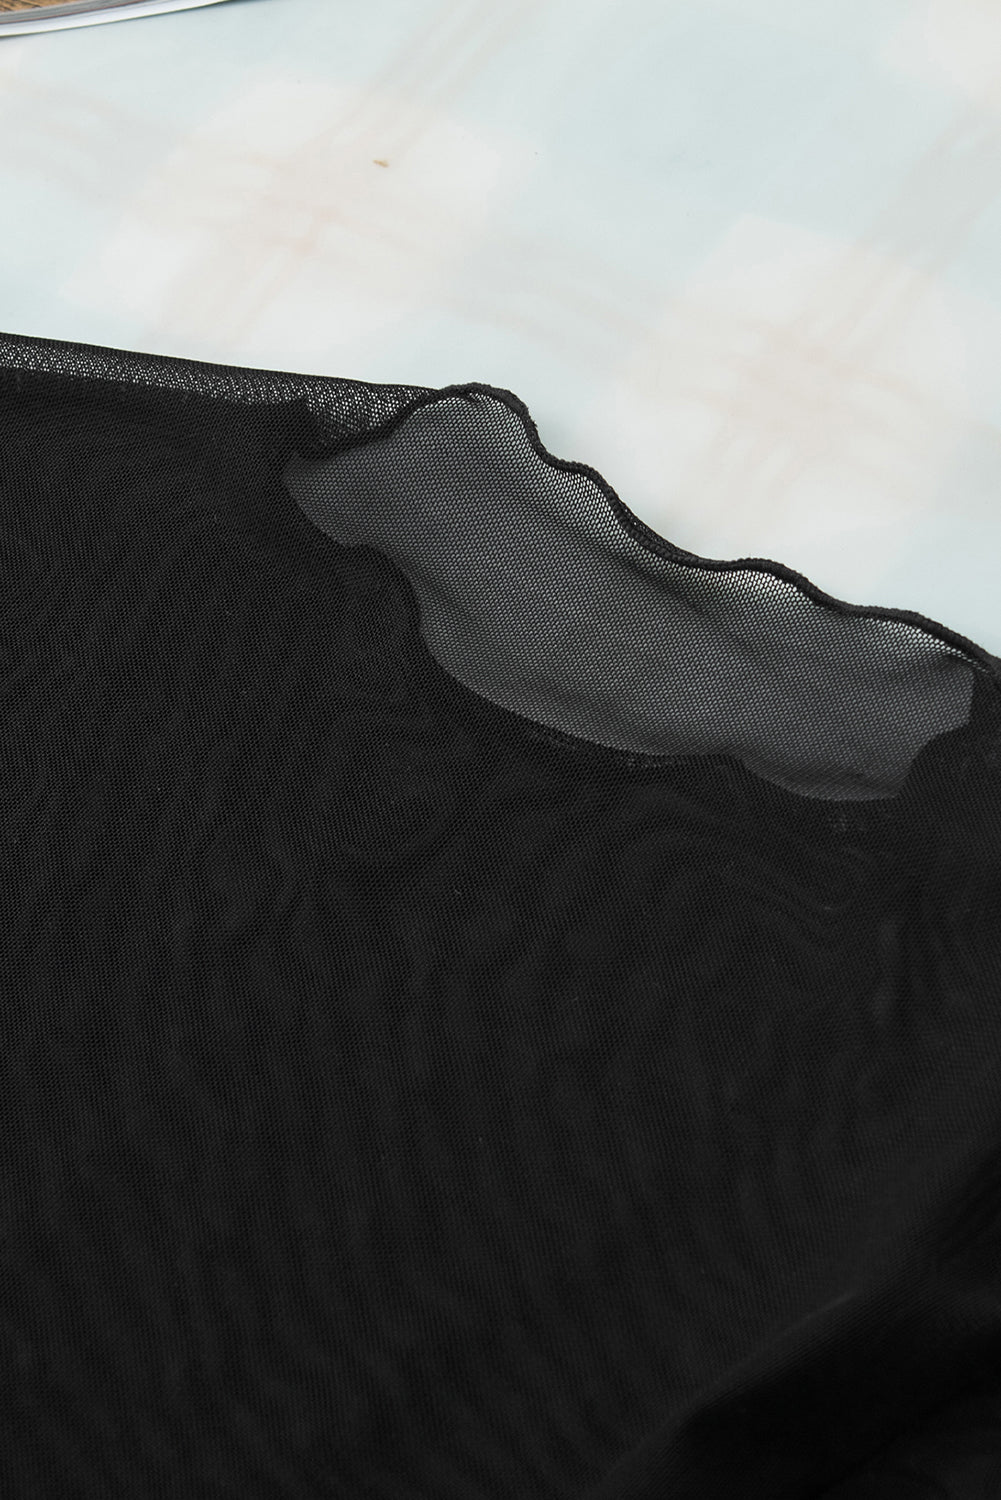 Crna majica s dugim rukavima od prozirne mrežaste tkanine uskog kroja